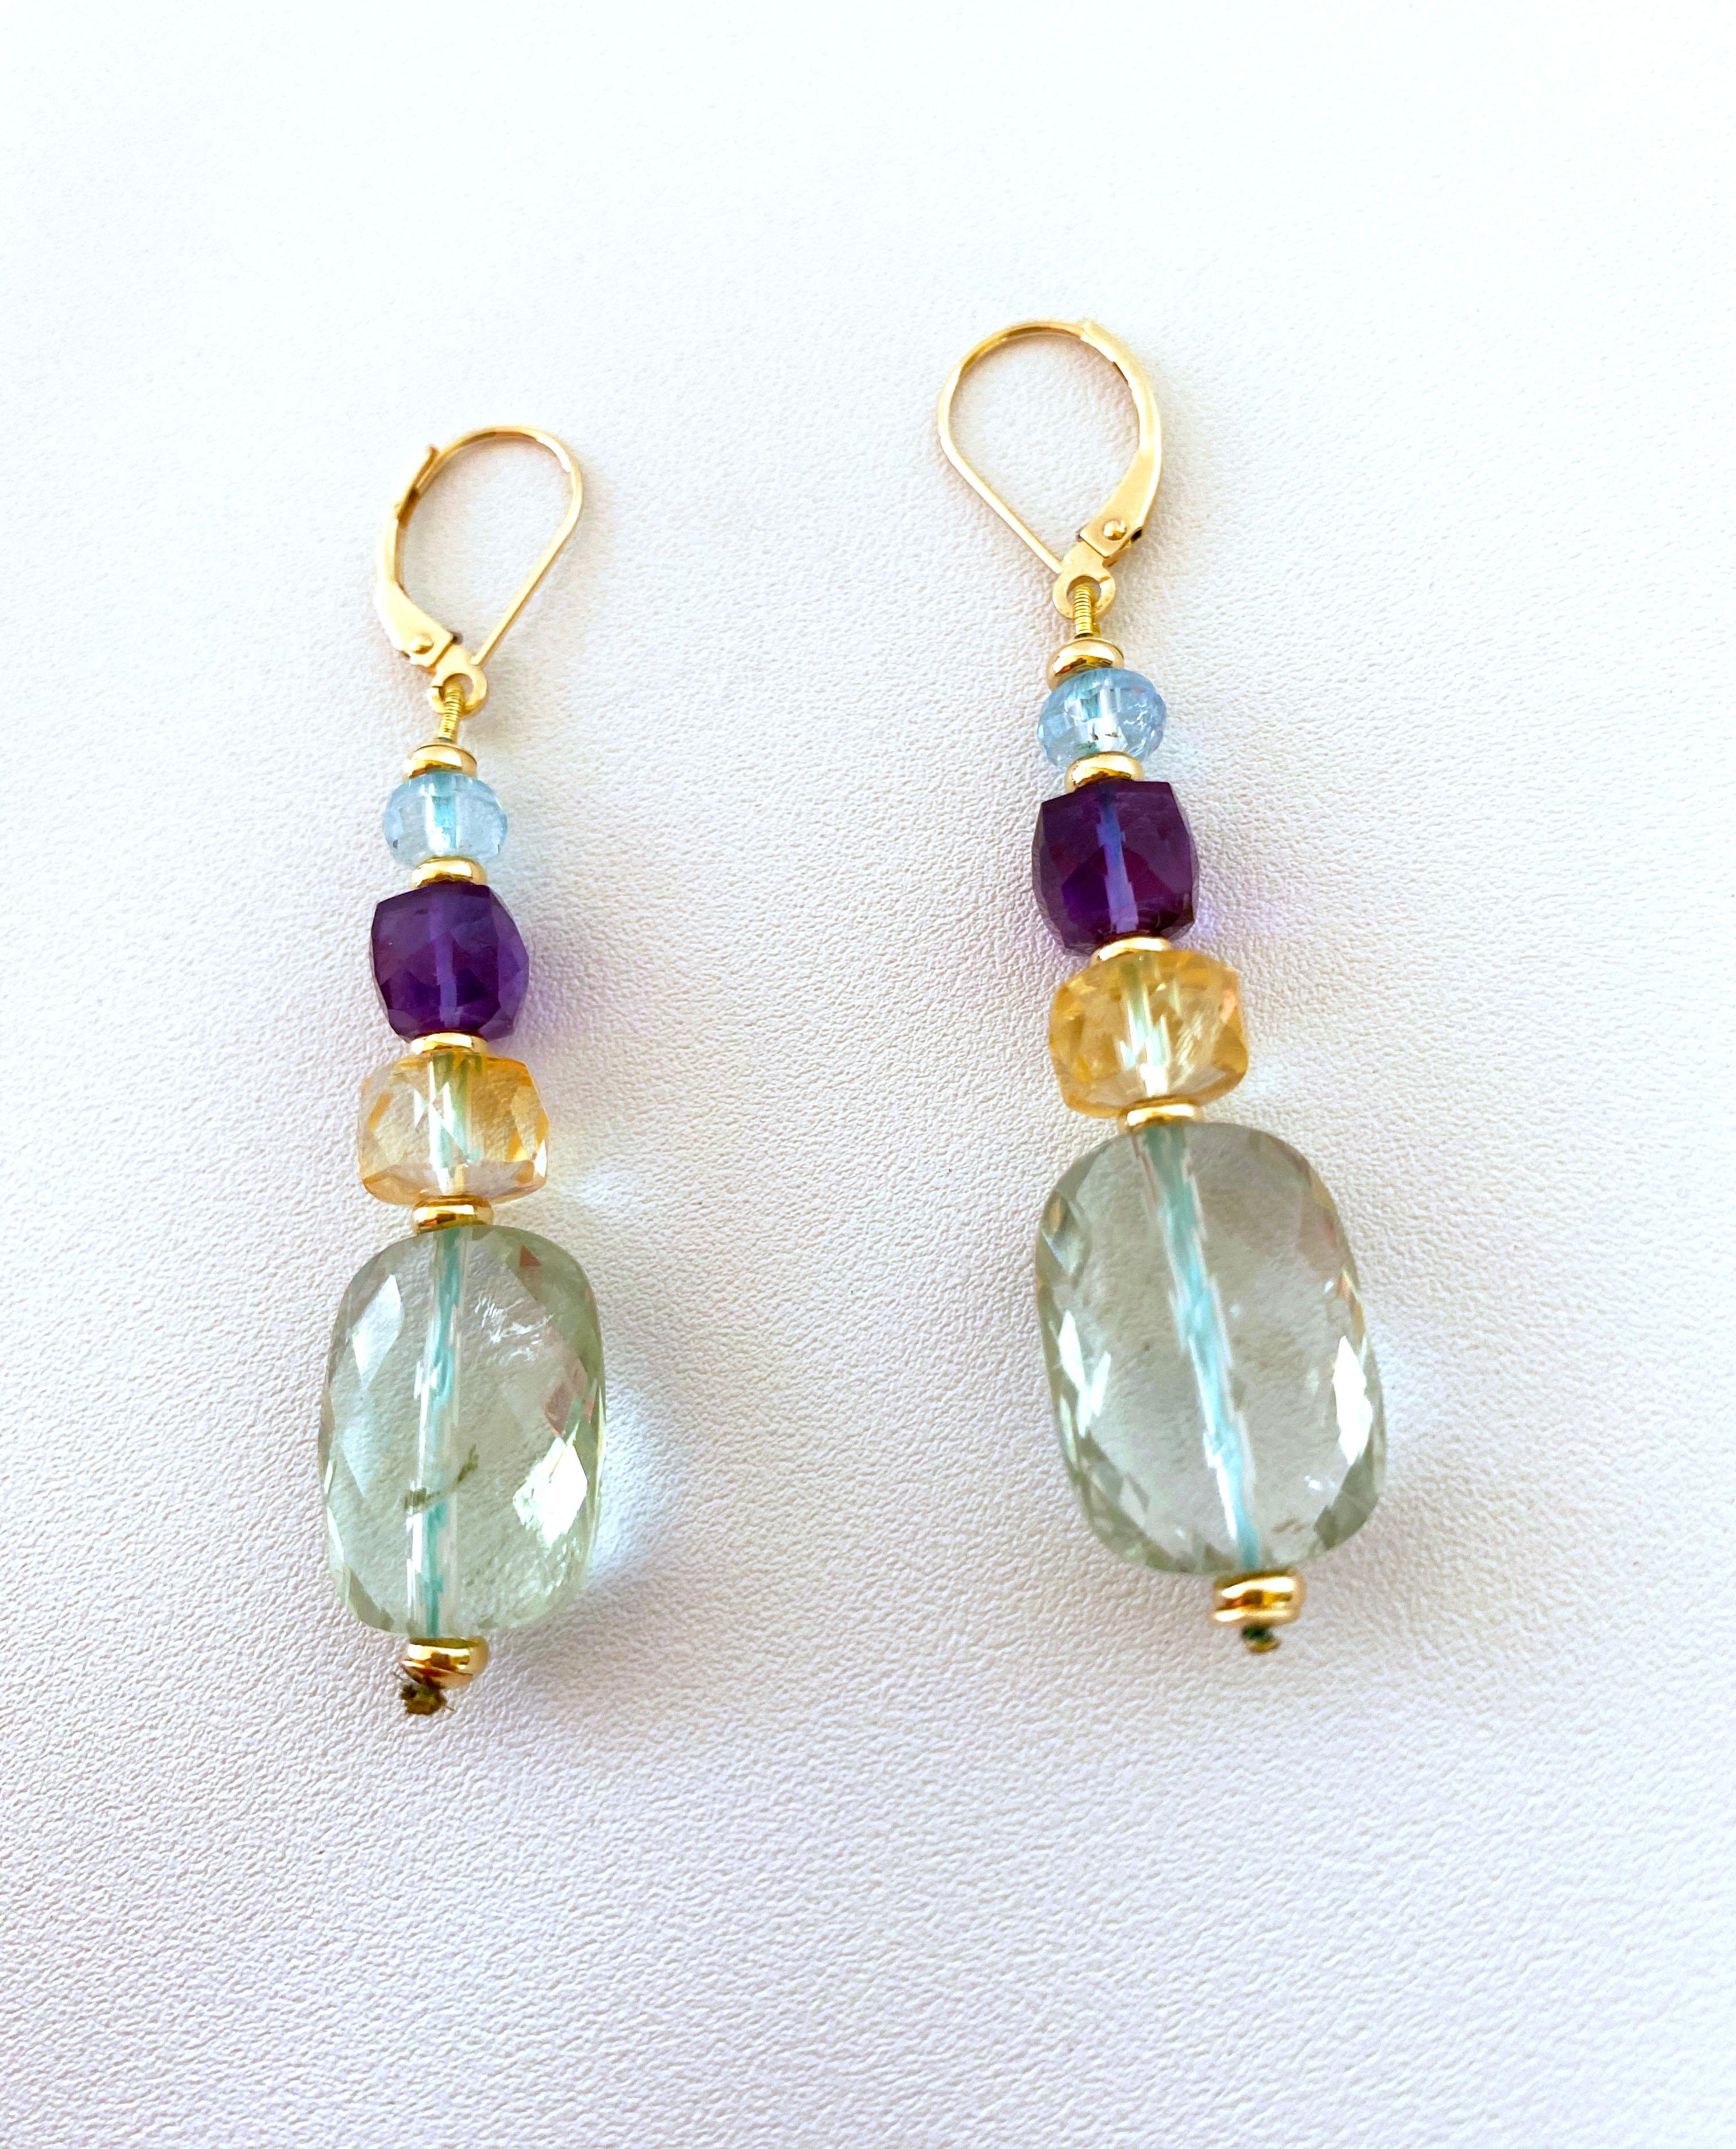 Jolie paire de la collection « Alexis ». Les boucles d'oreilles pendantes graduées et colorées sont réalisées avec des perles d'aigue-marine brillante, d'améthyste violette, de citrine et d'améthyste verte de différentes formes. Suspendue à des